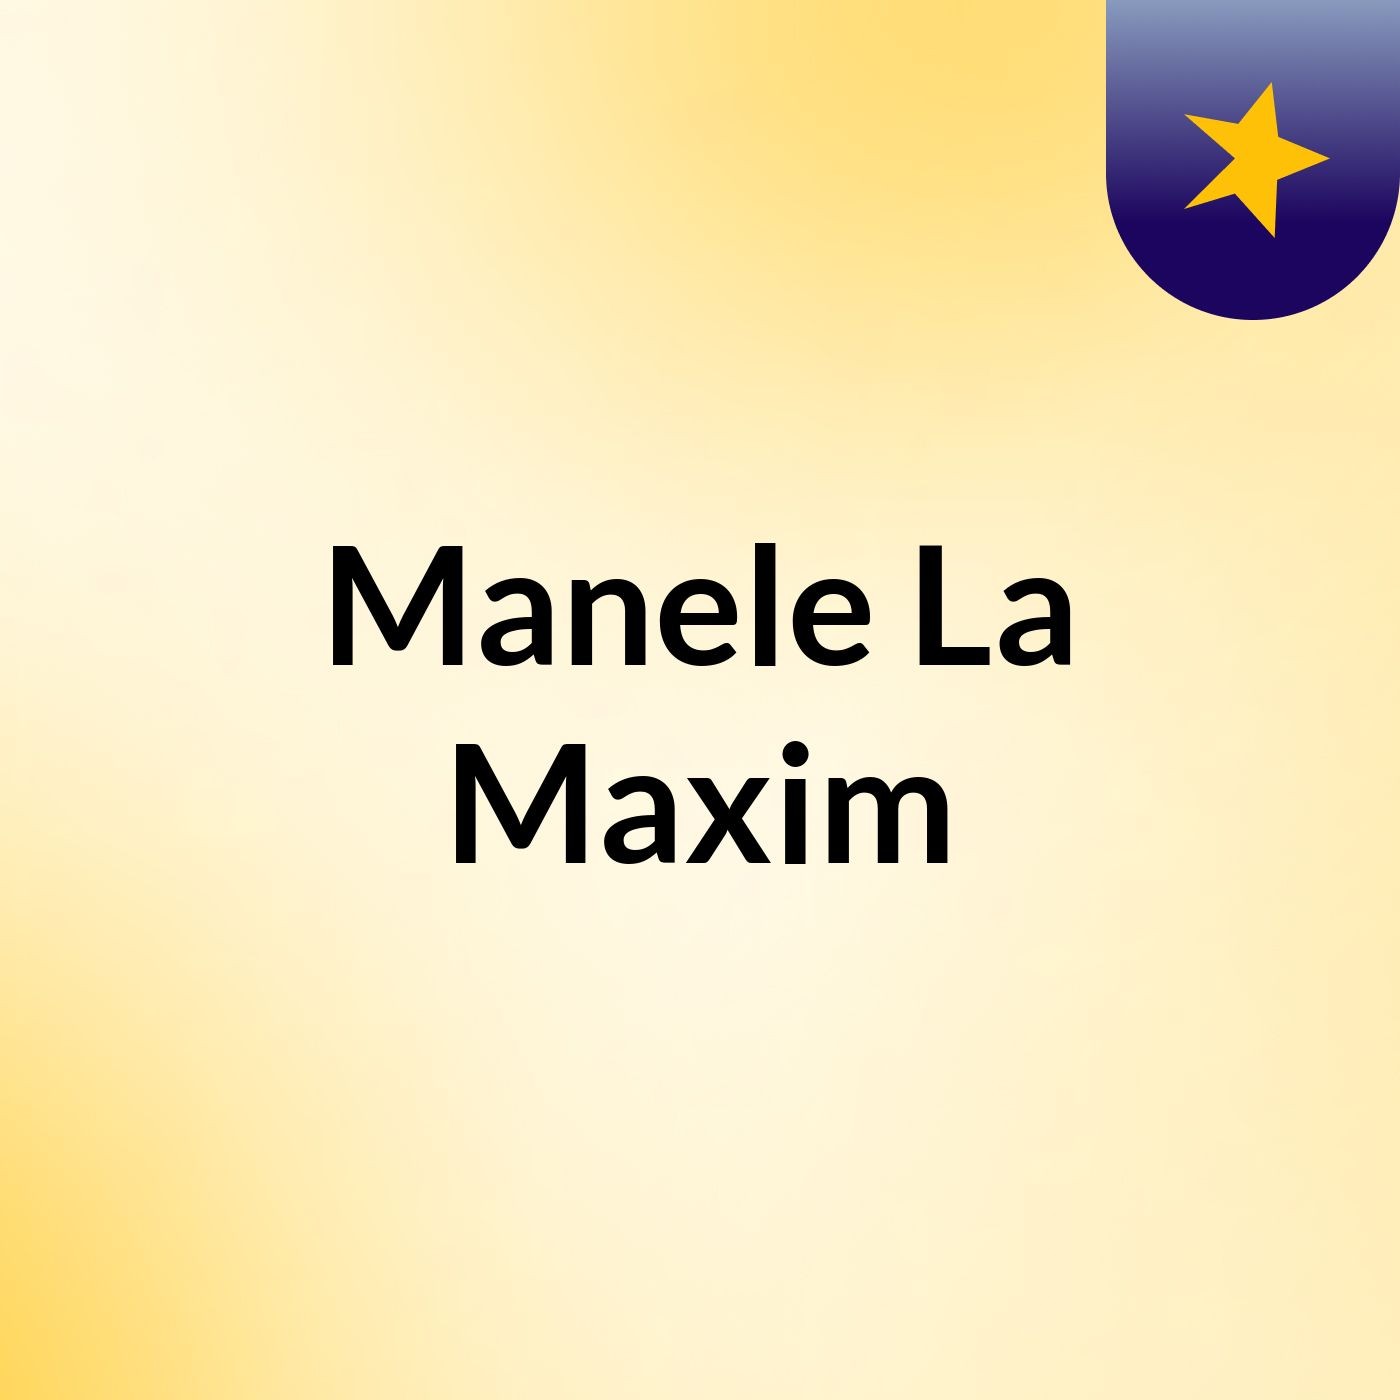 Manele La Maxim